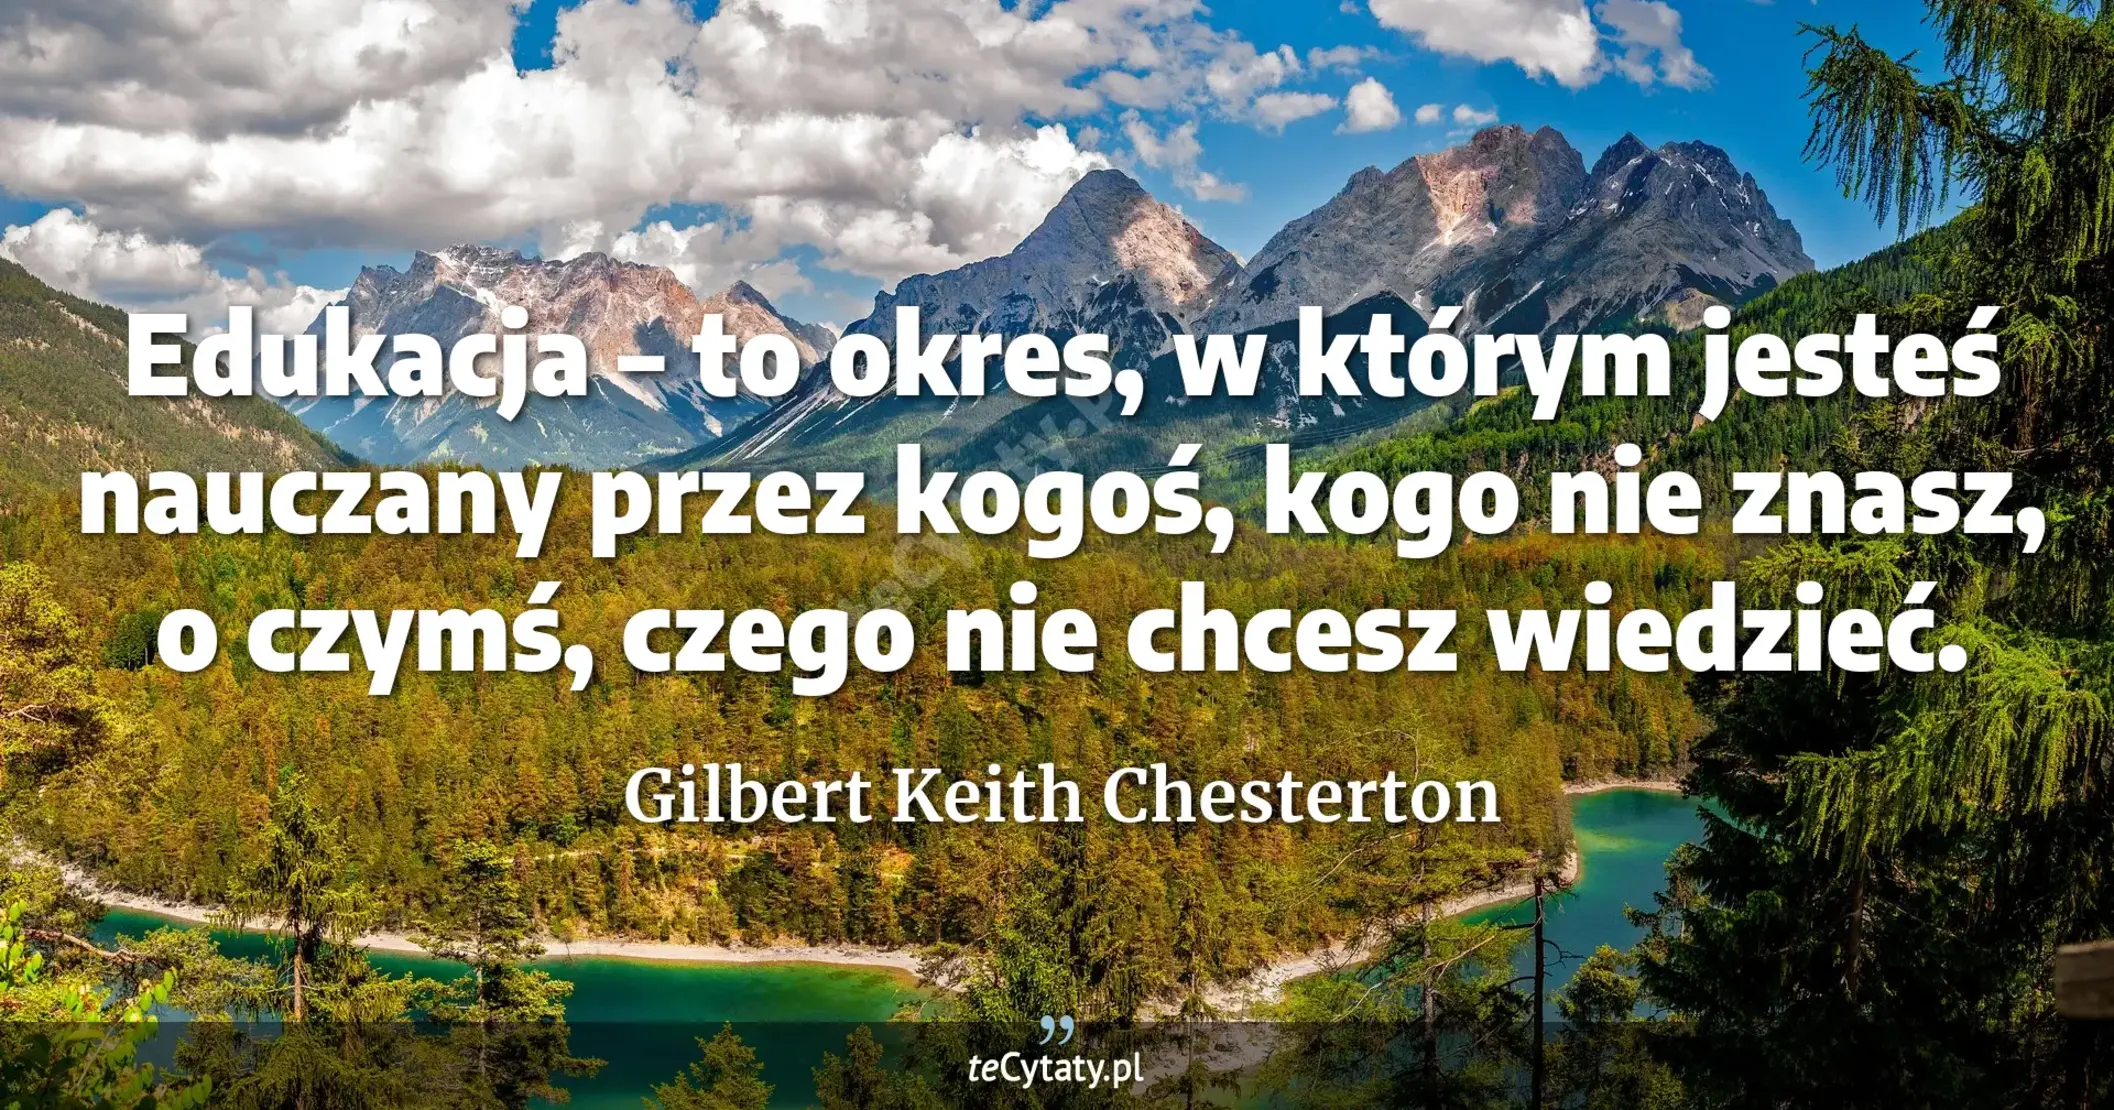 Edukacja – to okres, w którym jesteś nauczany przez kogoś, kogo nie znasz, o czymś, czego nie chcesz wiedzieć. - Gilbert Keith Chesterton